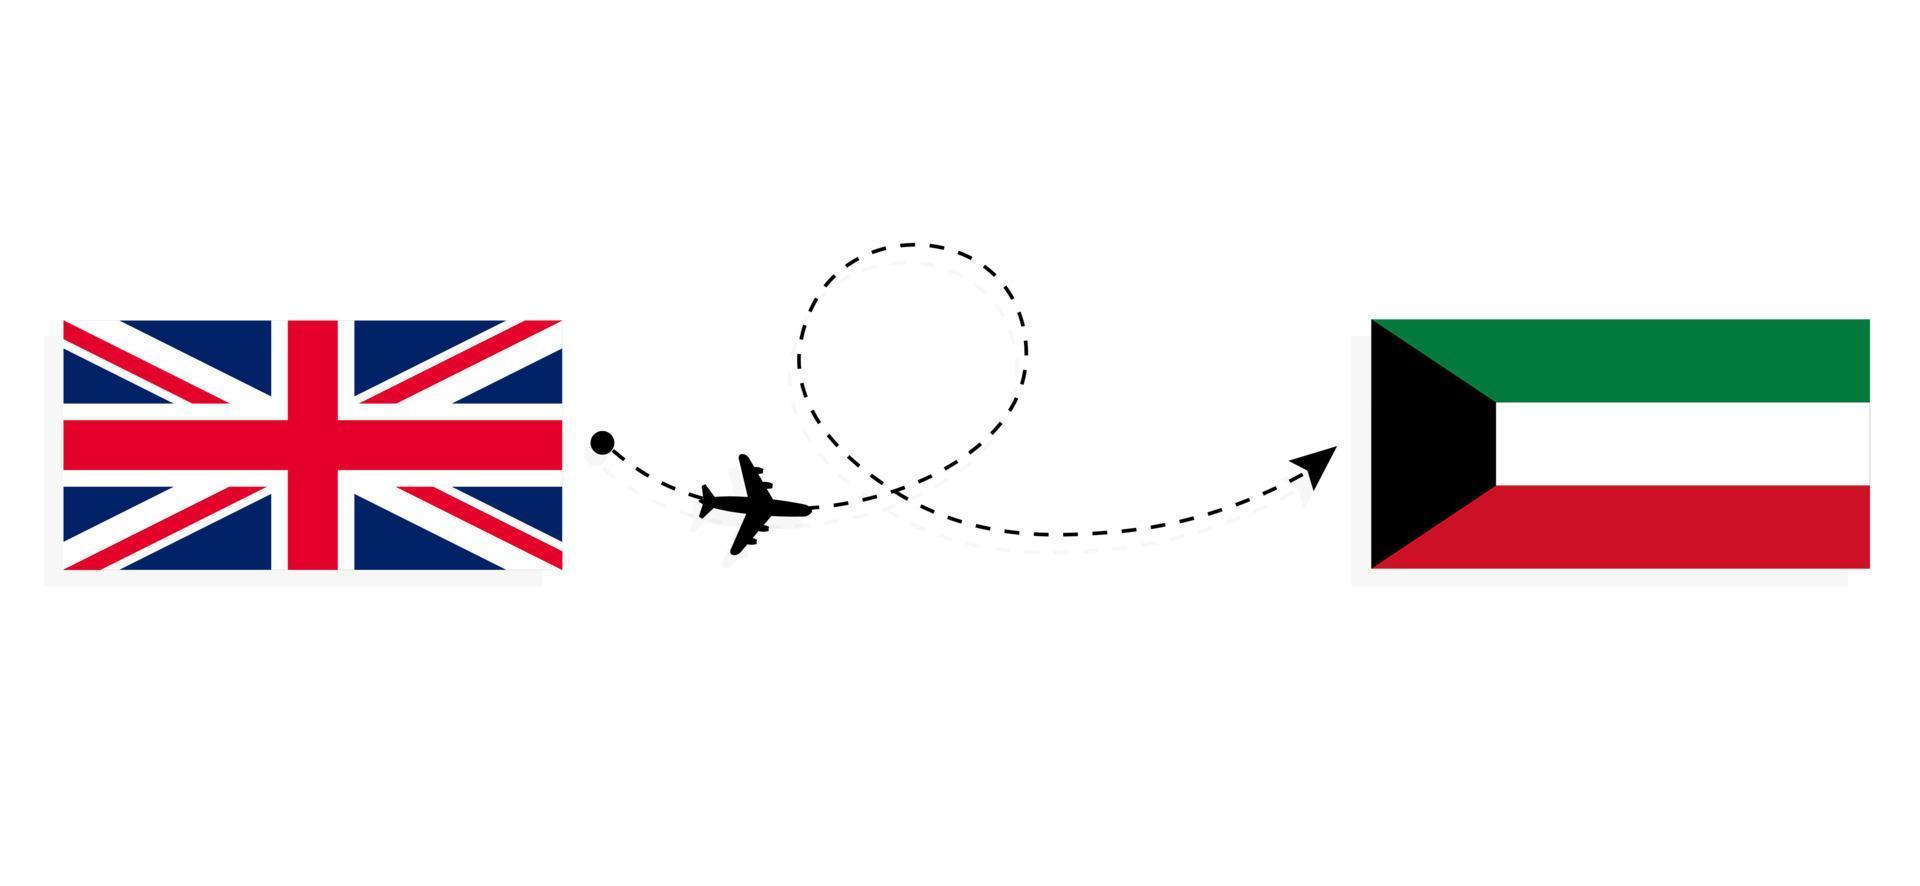 flyg och resor från Storbritannien till Kuwait med passagerarflygplan vektor